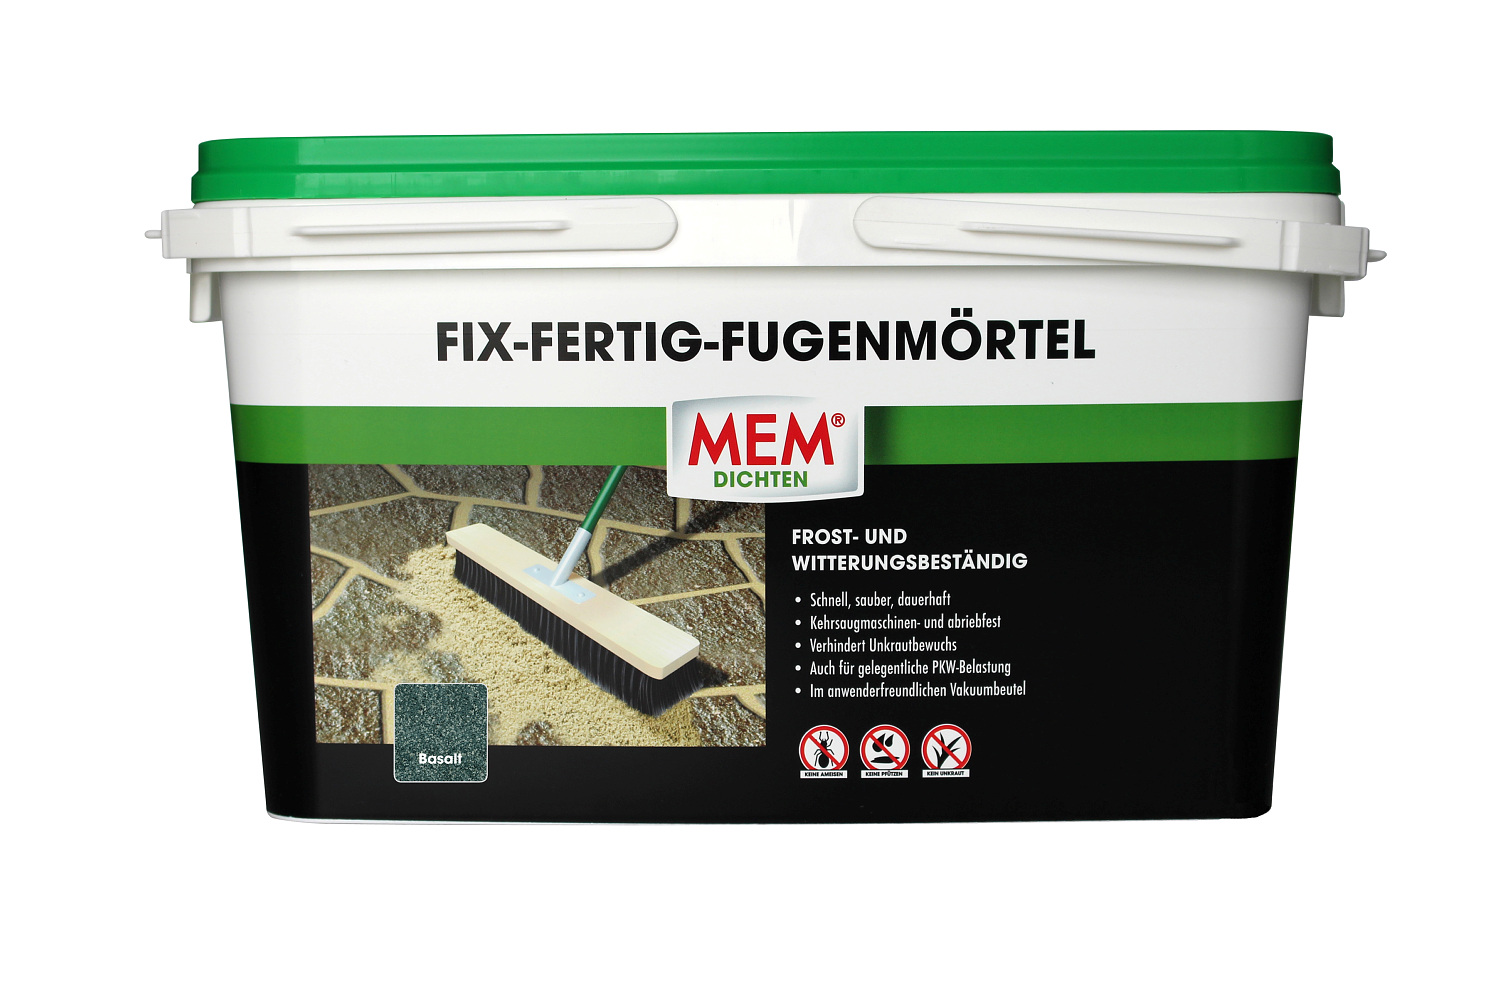 MEM Fix-Fertig-Fugenmörtel 25 kg basalt